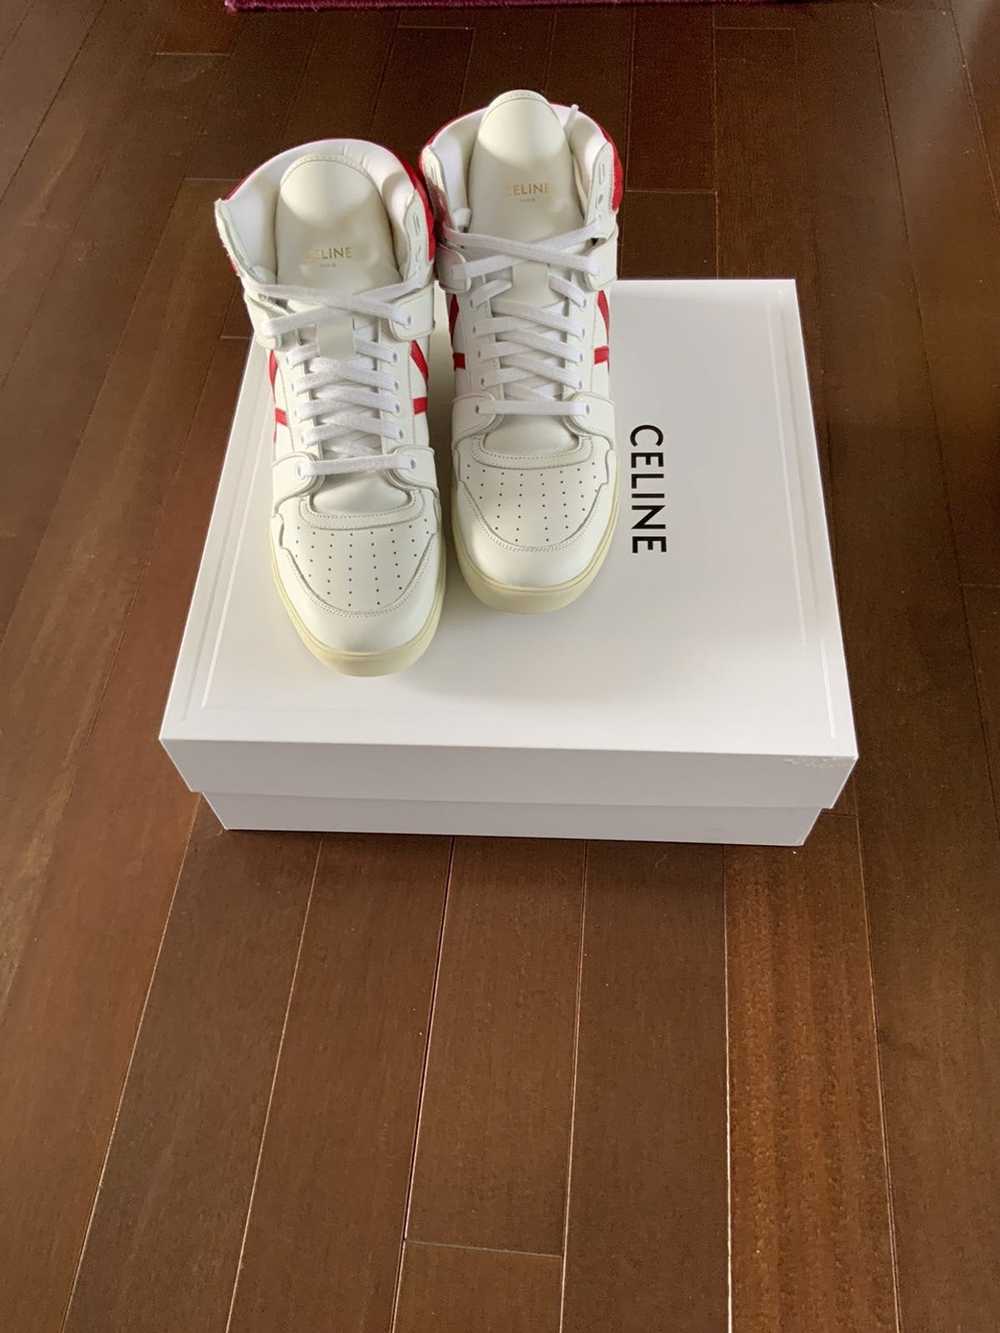 Celine Celine Mid Top Brake Sneaker in White and … - image 1